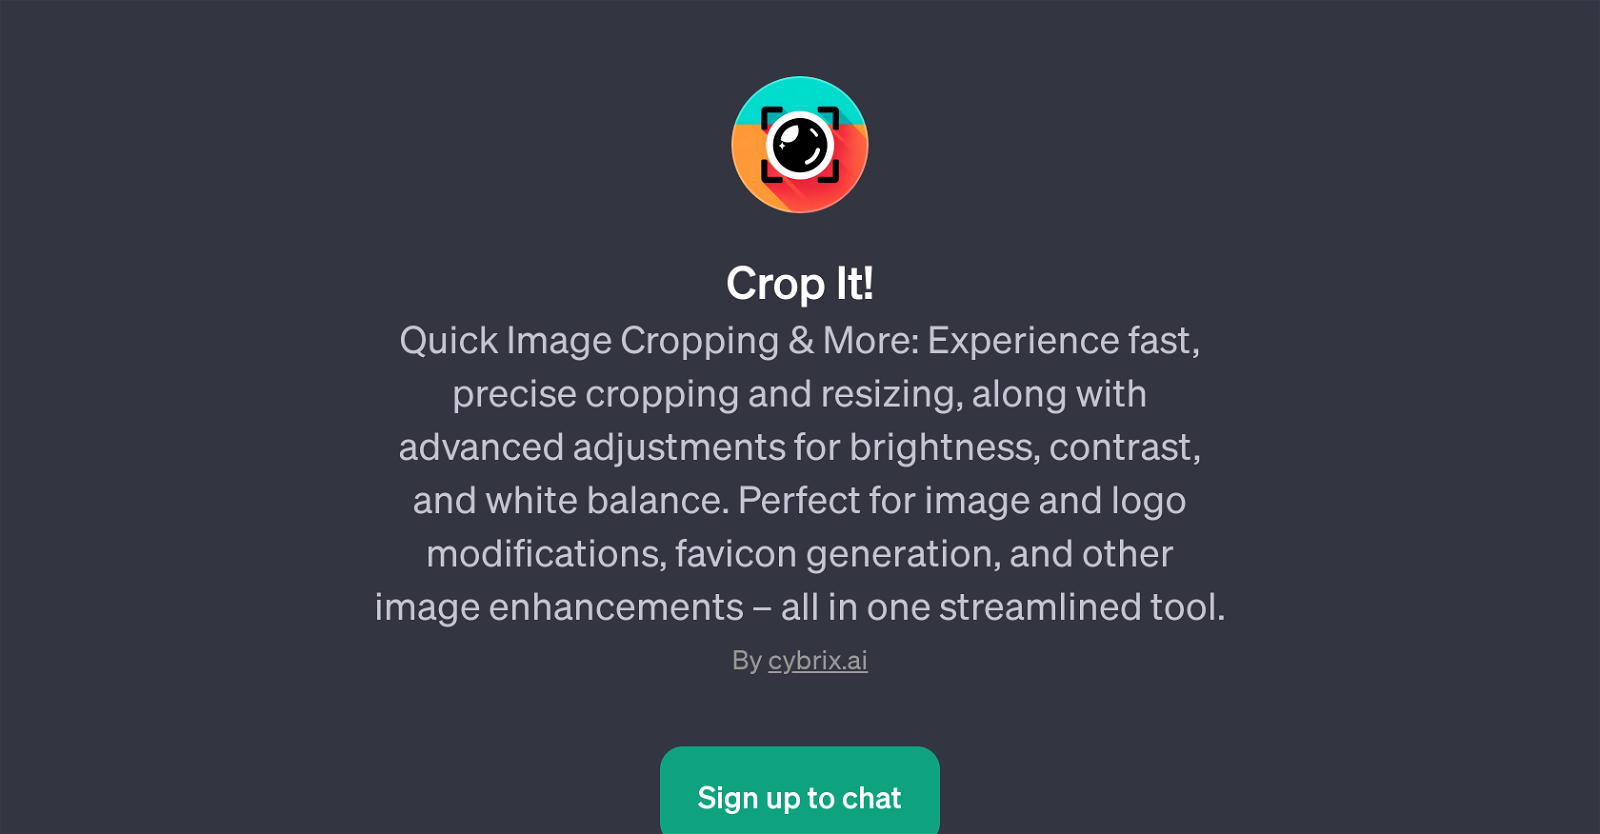 Crop It! website